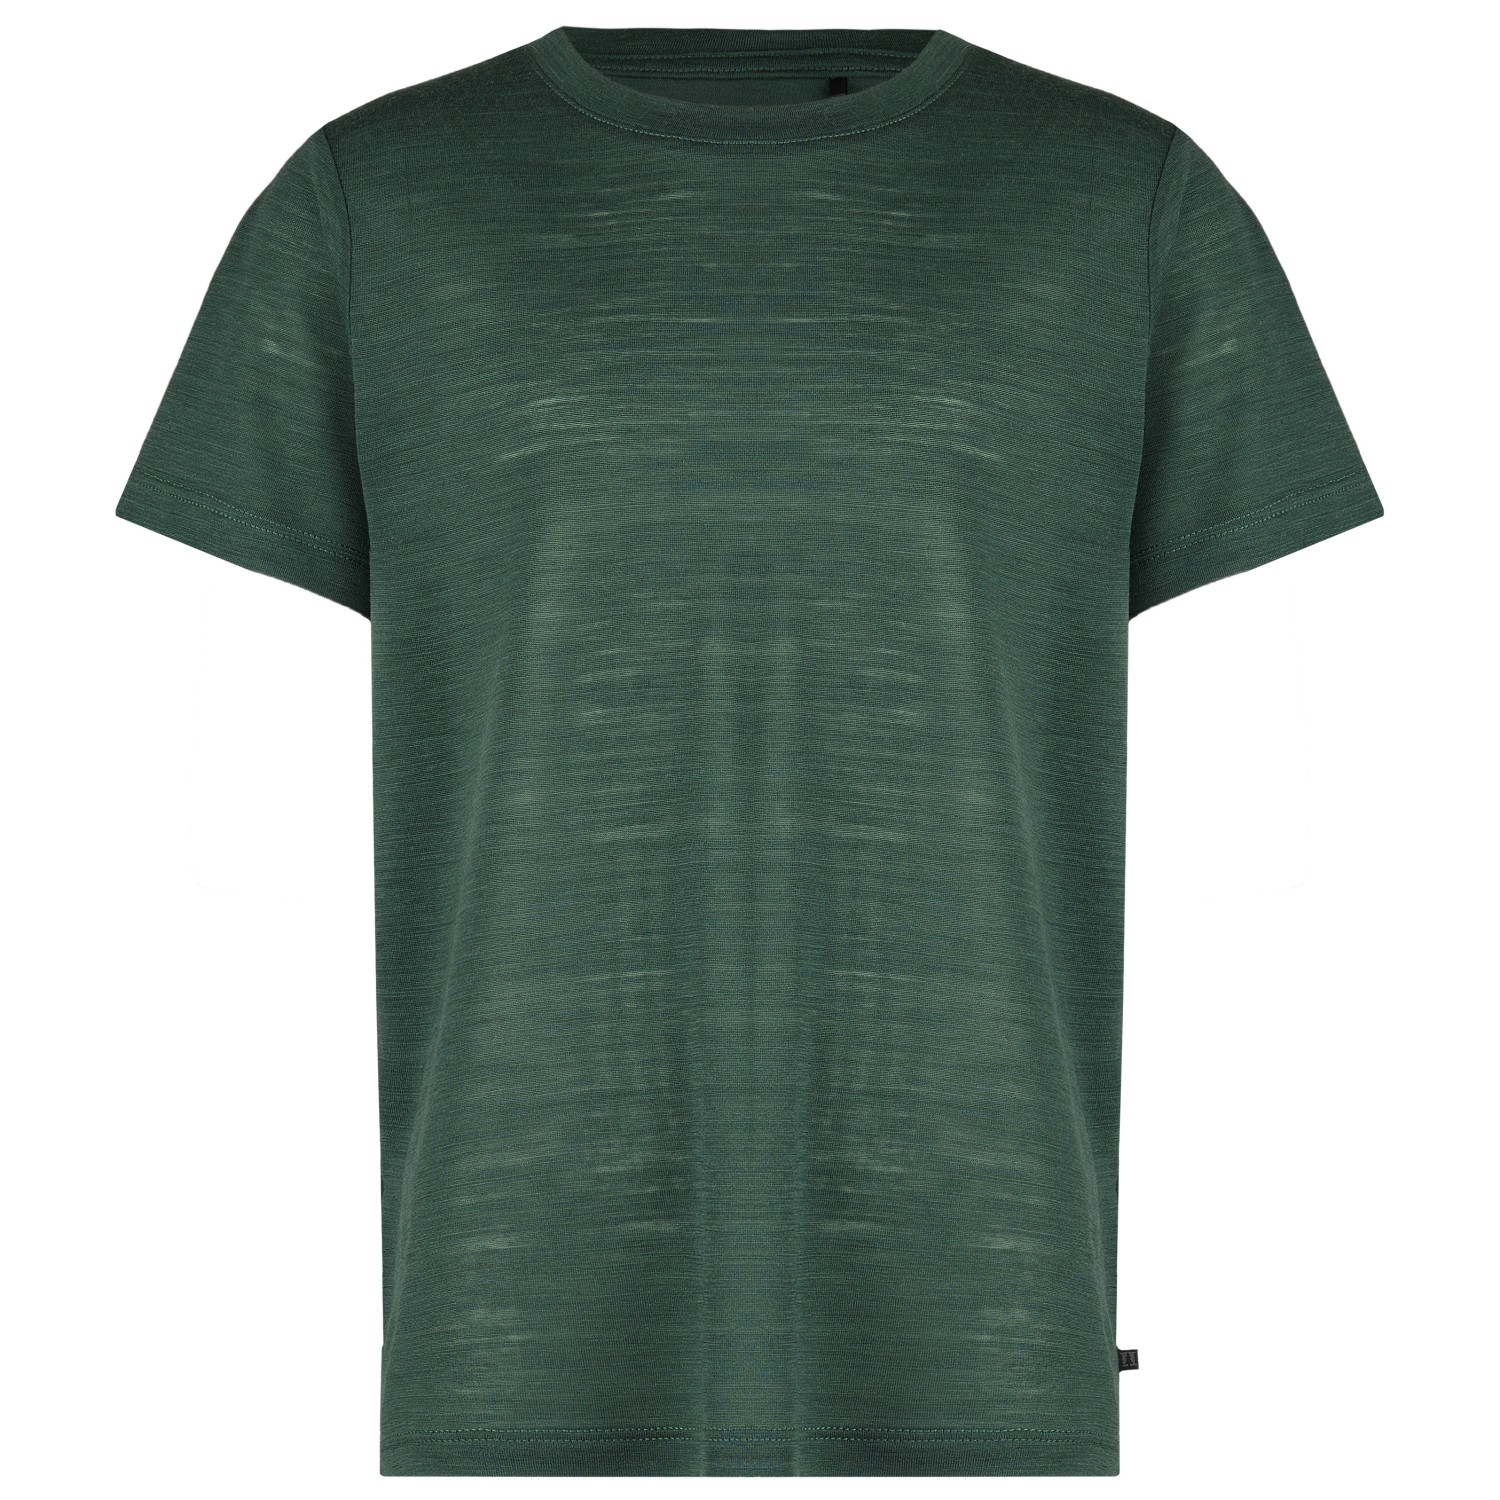 Рубашка из мериноса Heber Peak Kid's MerinoMix150 PineconeHe T Shirt, цвет Parsley Green